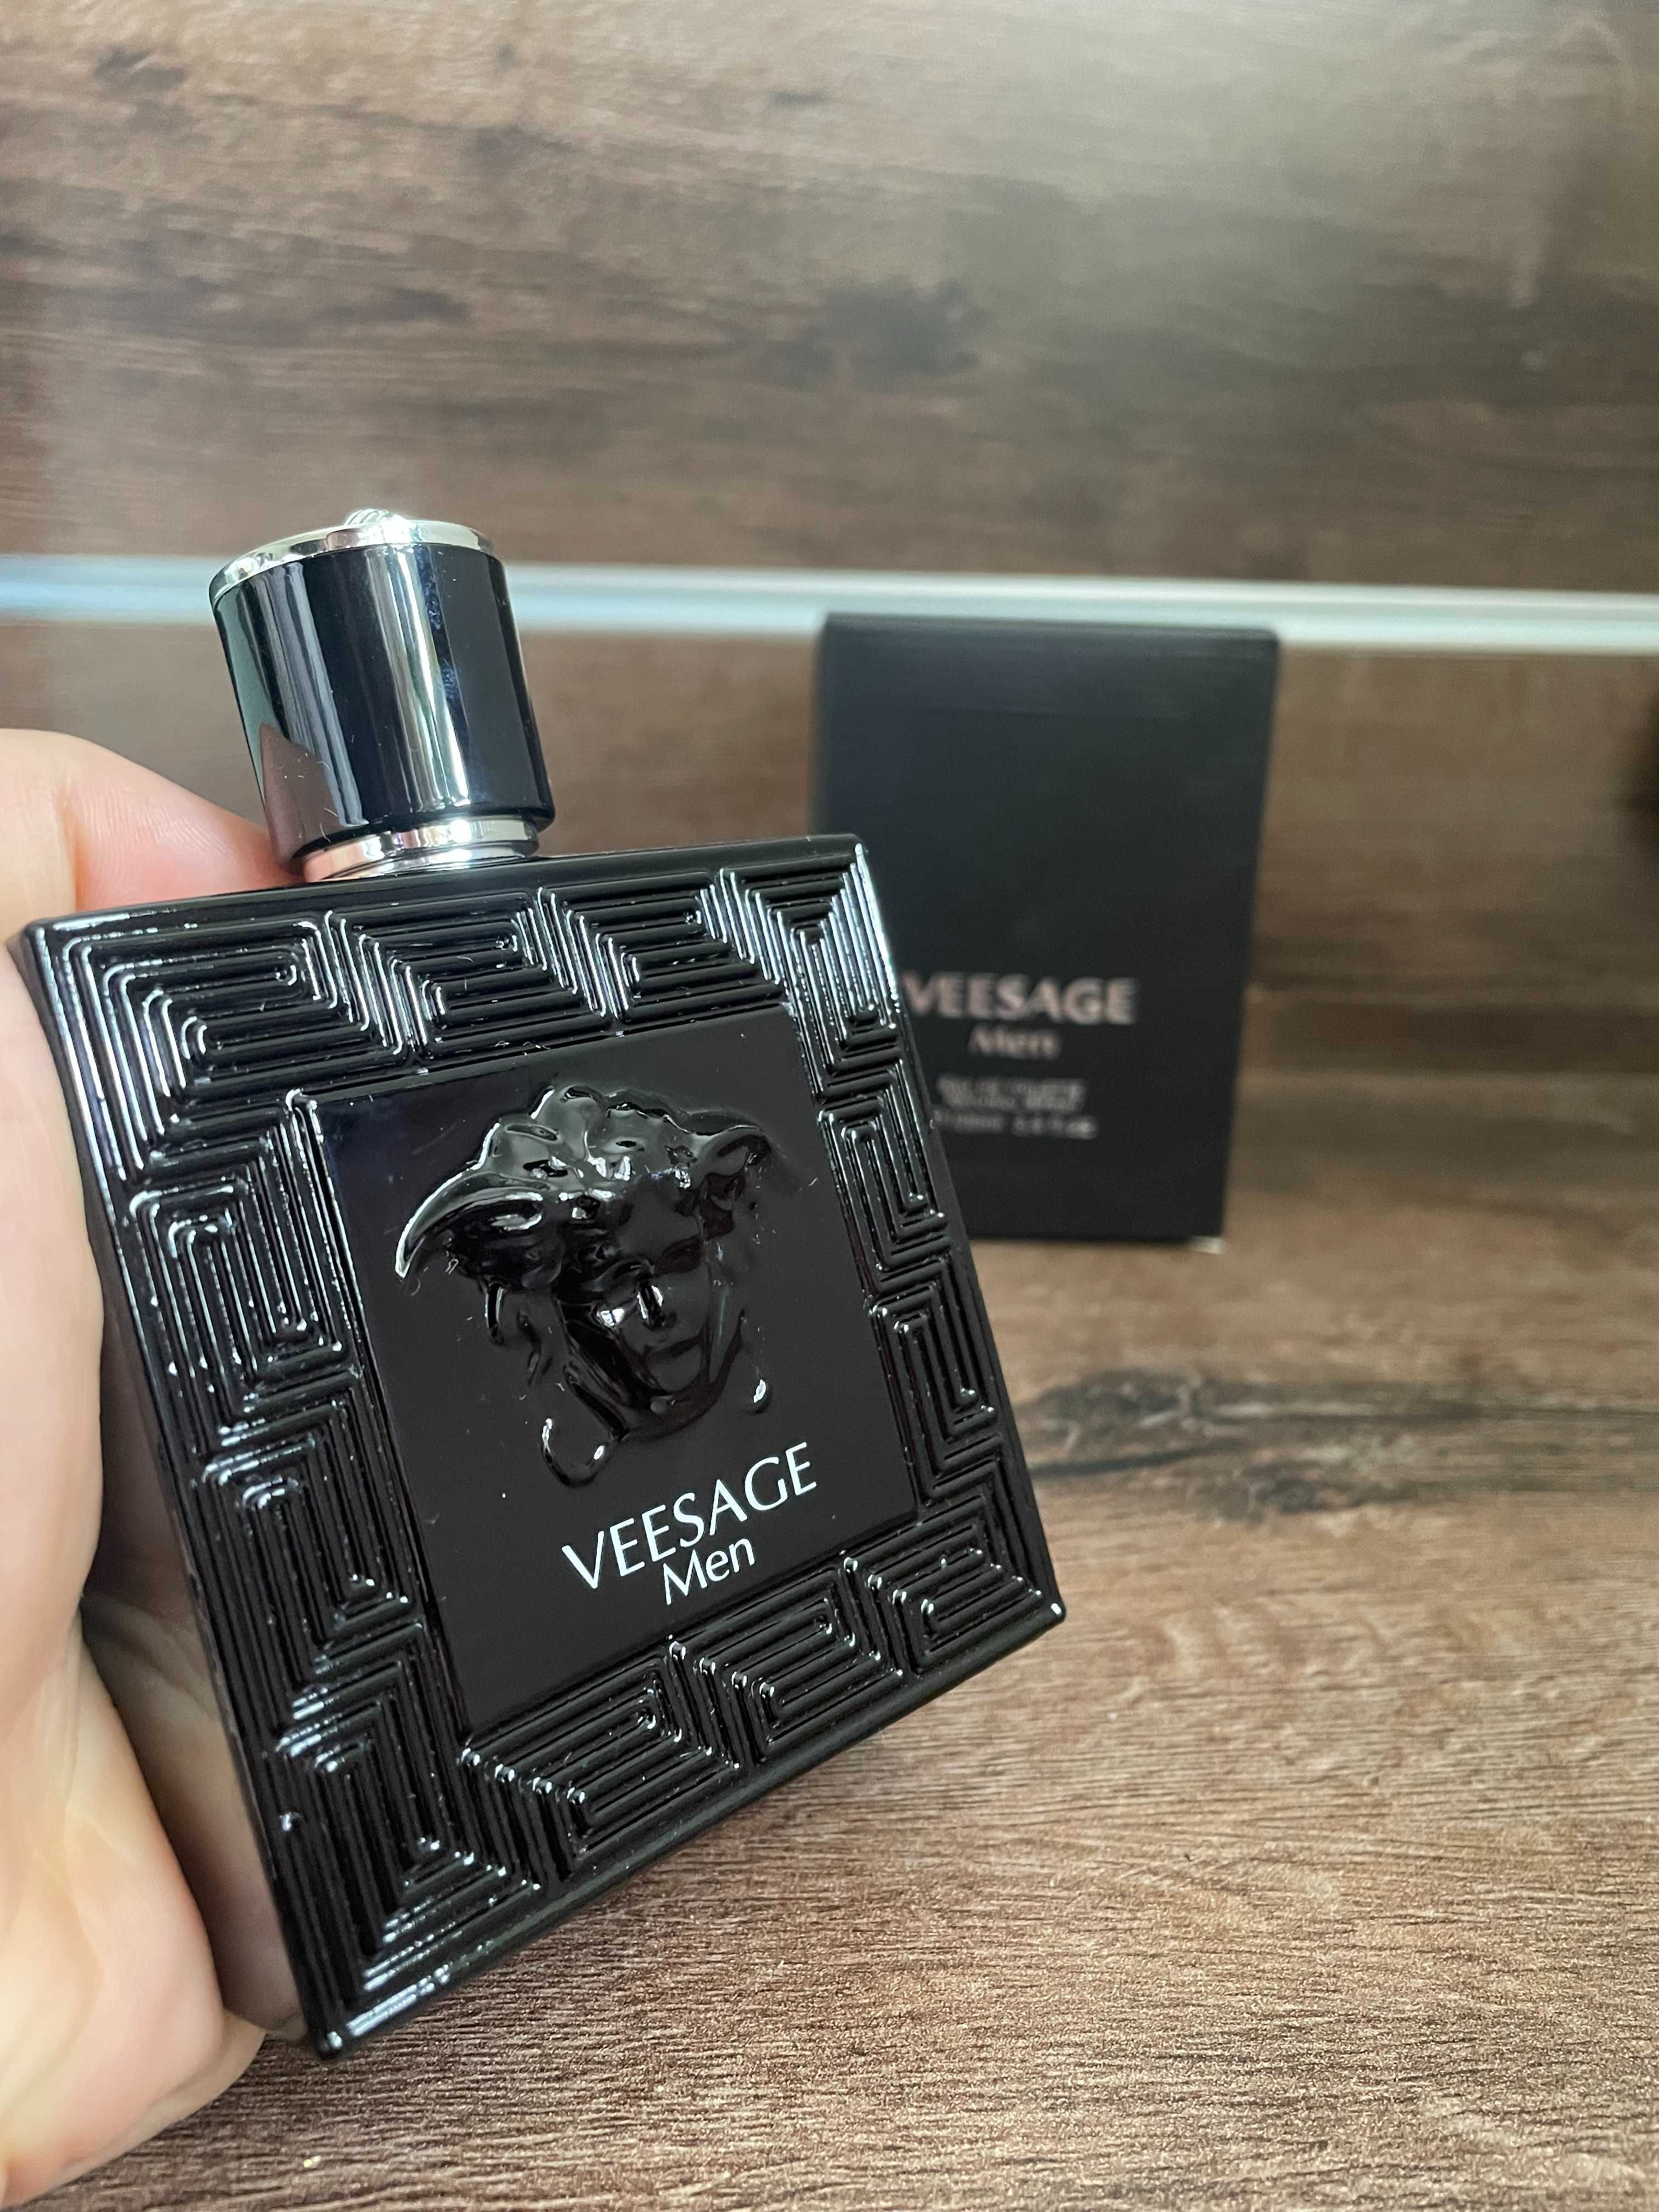 VEESAGE MEN czarne 100ml - Perfumy męskie